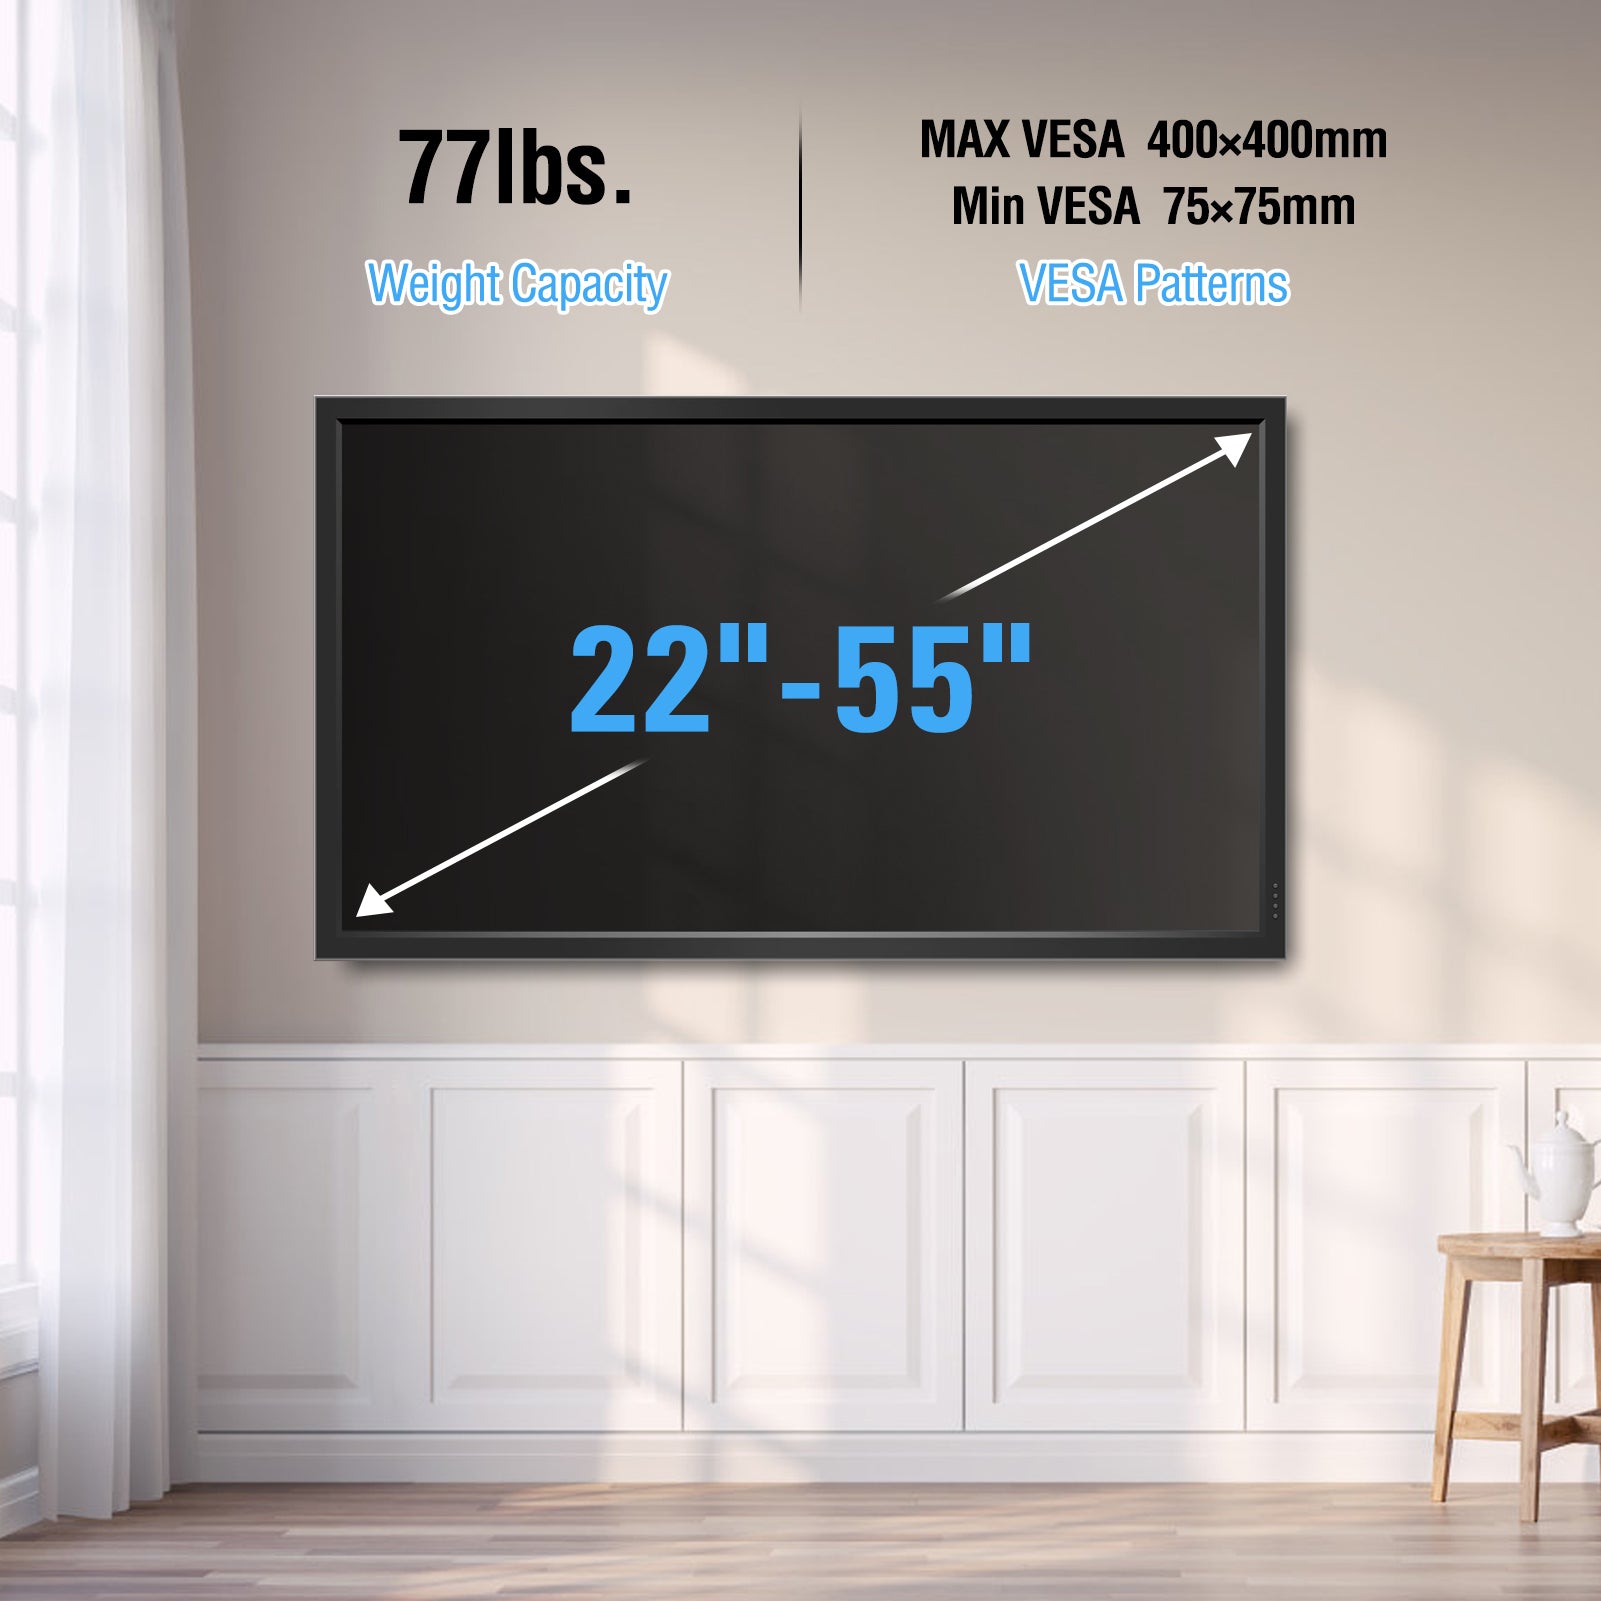 Full Motion TV Wall Mount for 22''-55" TVs MUT0065